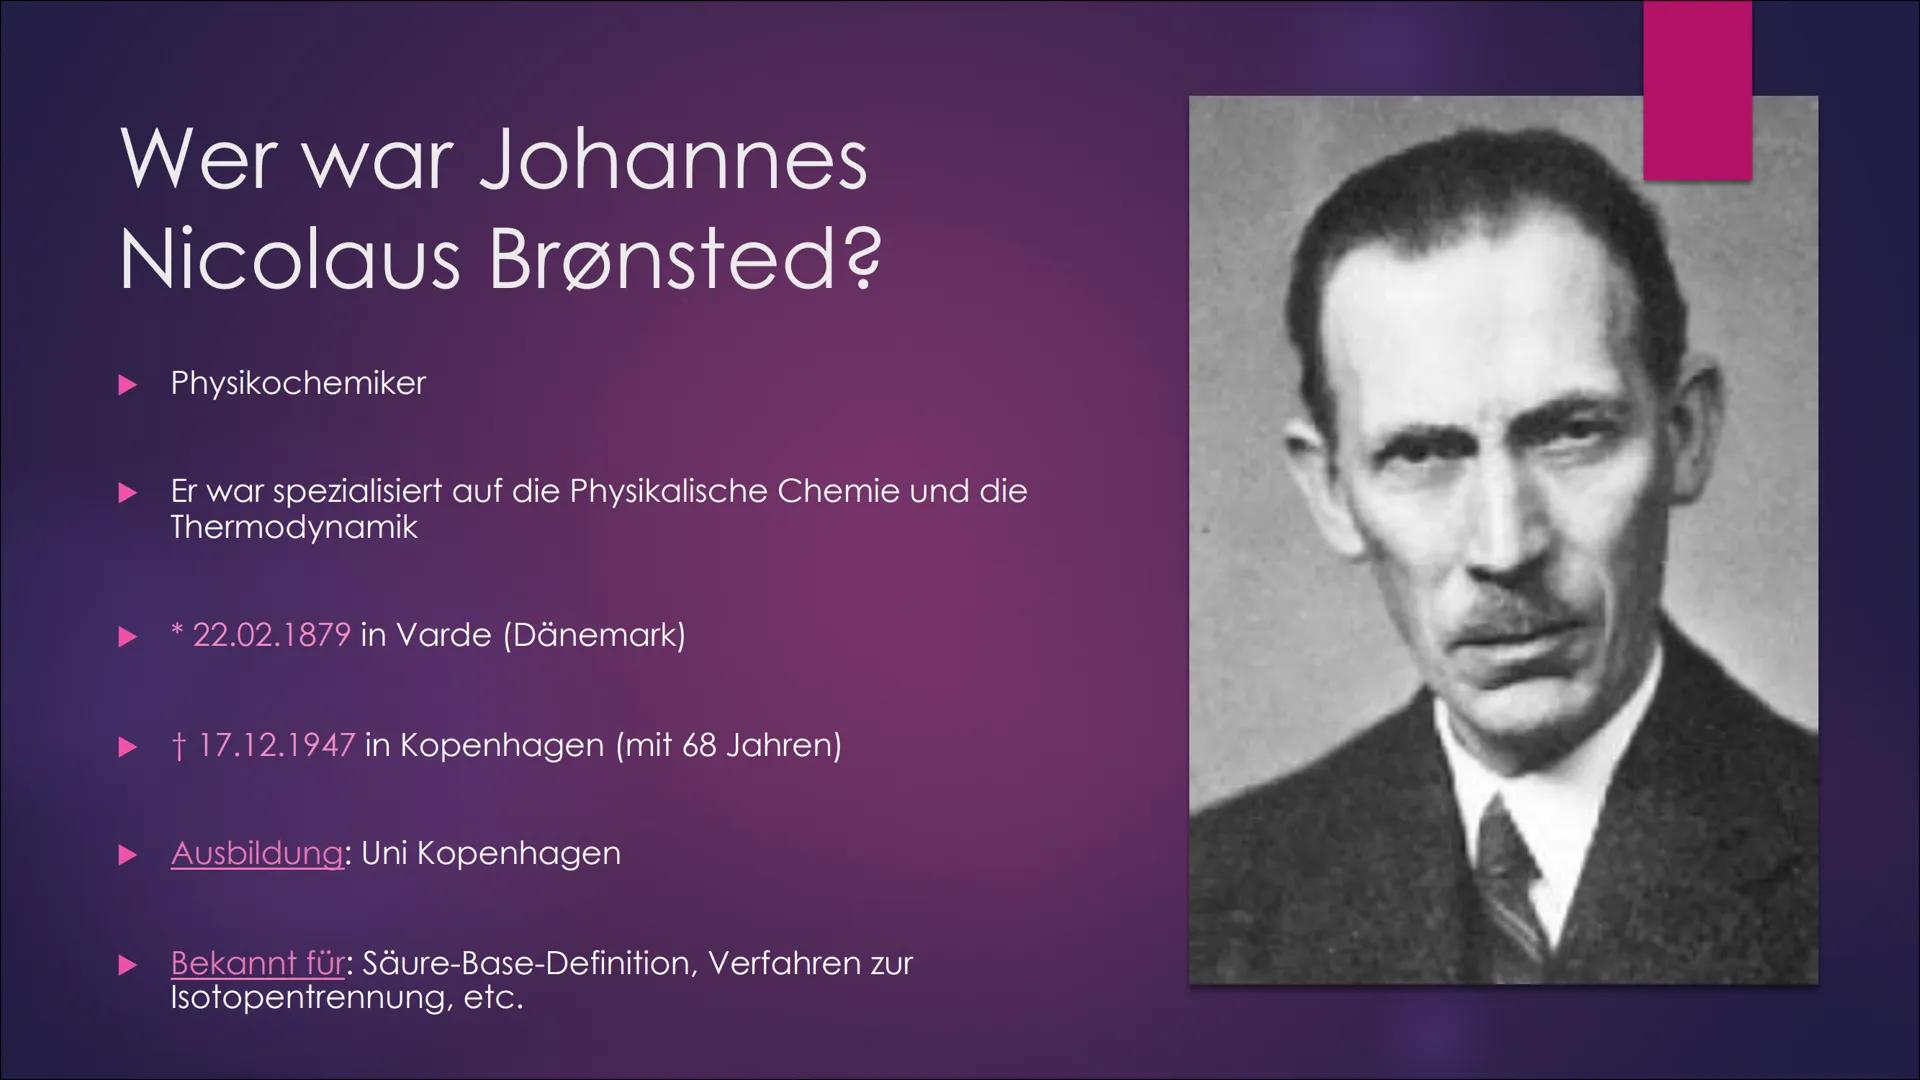 
<p>Johannes Nicolaus Brønsted war ein dänischer Physikochemiker, der sich auf die Physikalische Chemie und die Thermodynamik spezialisiert 